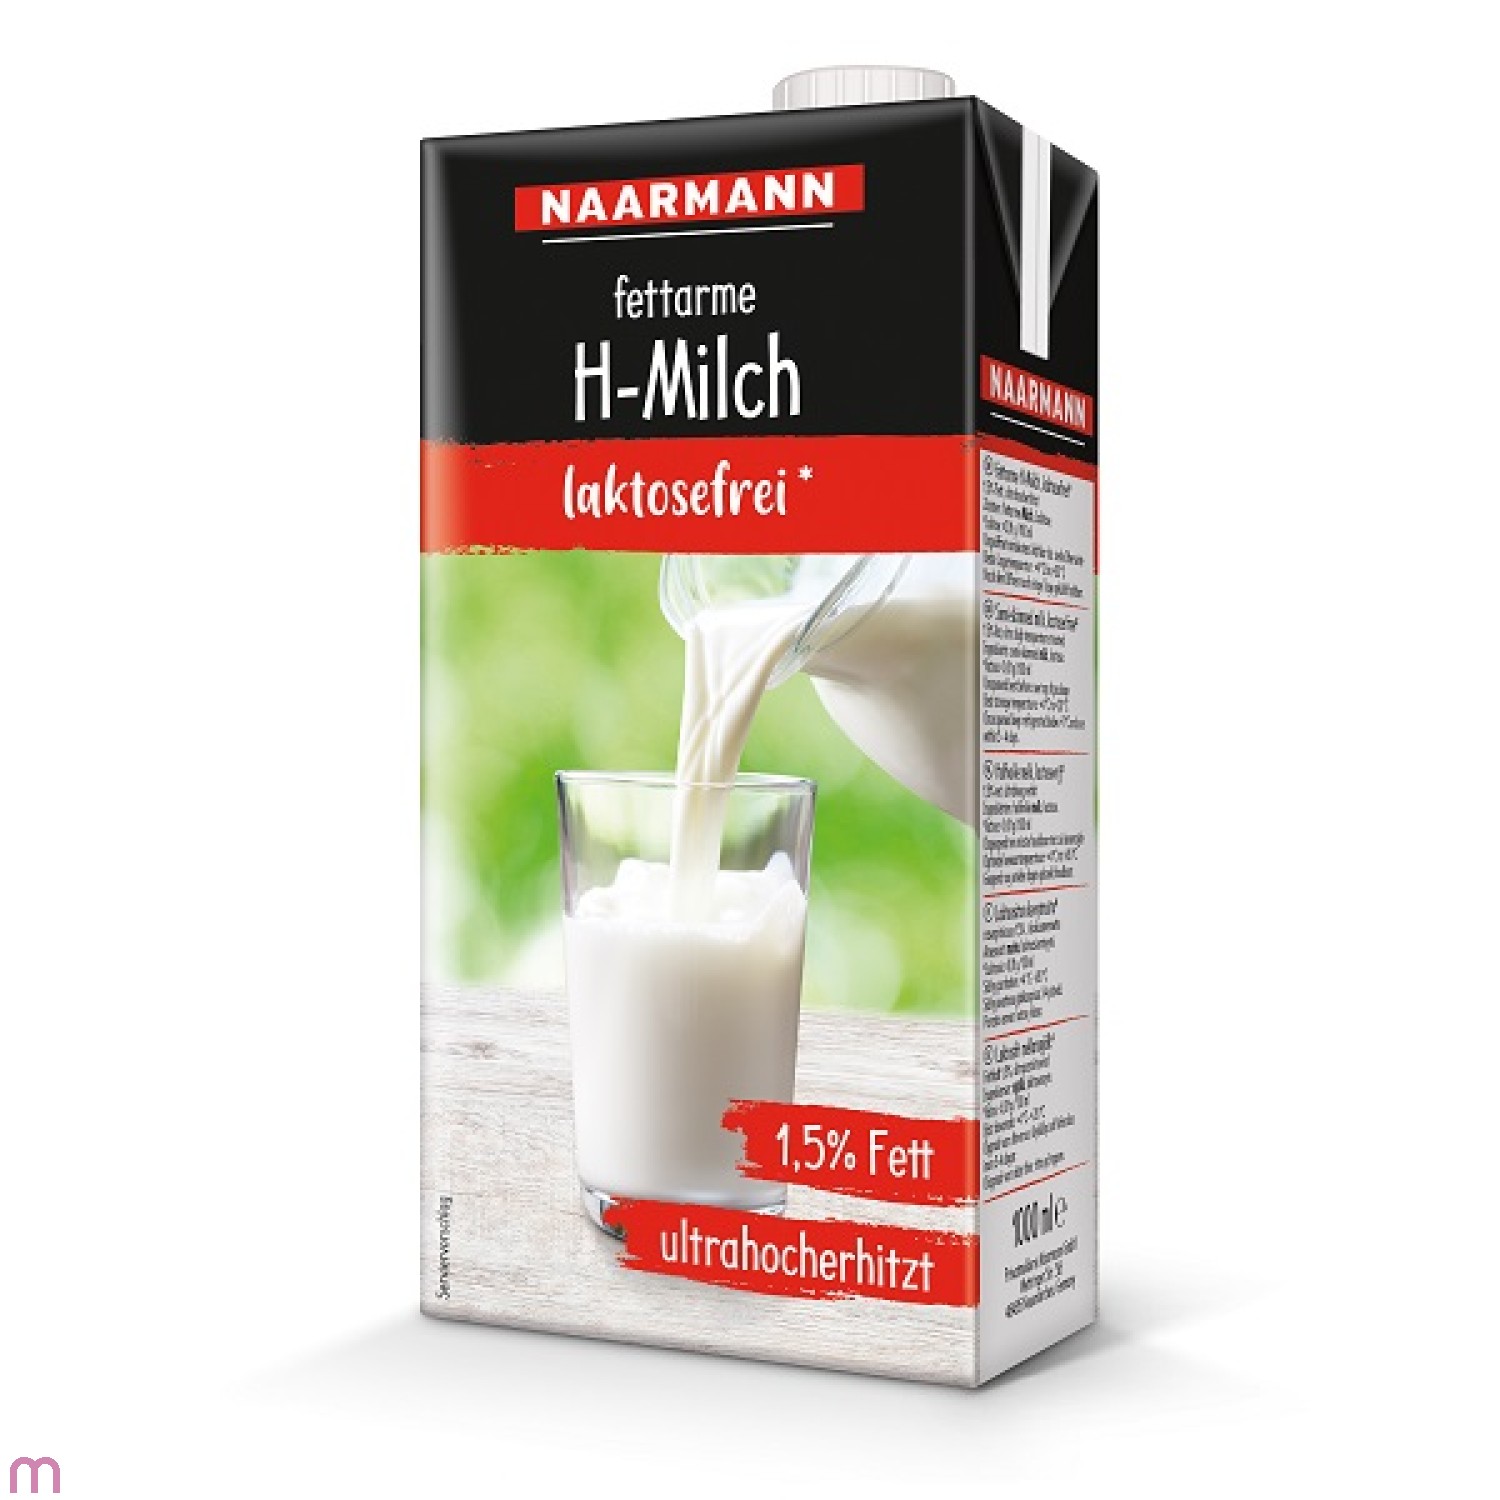 Naarmann H-Milch Laktosefrei 1,5% Fett haltbare Vollmilch mit Drehverschluss 12 x 1l